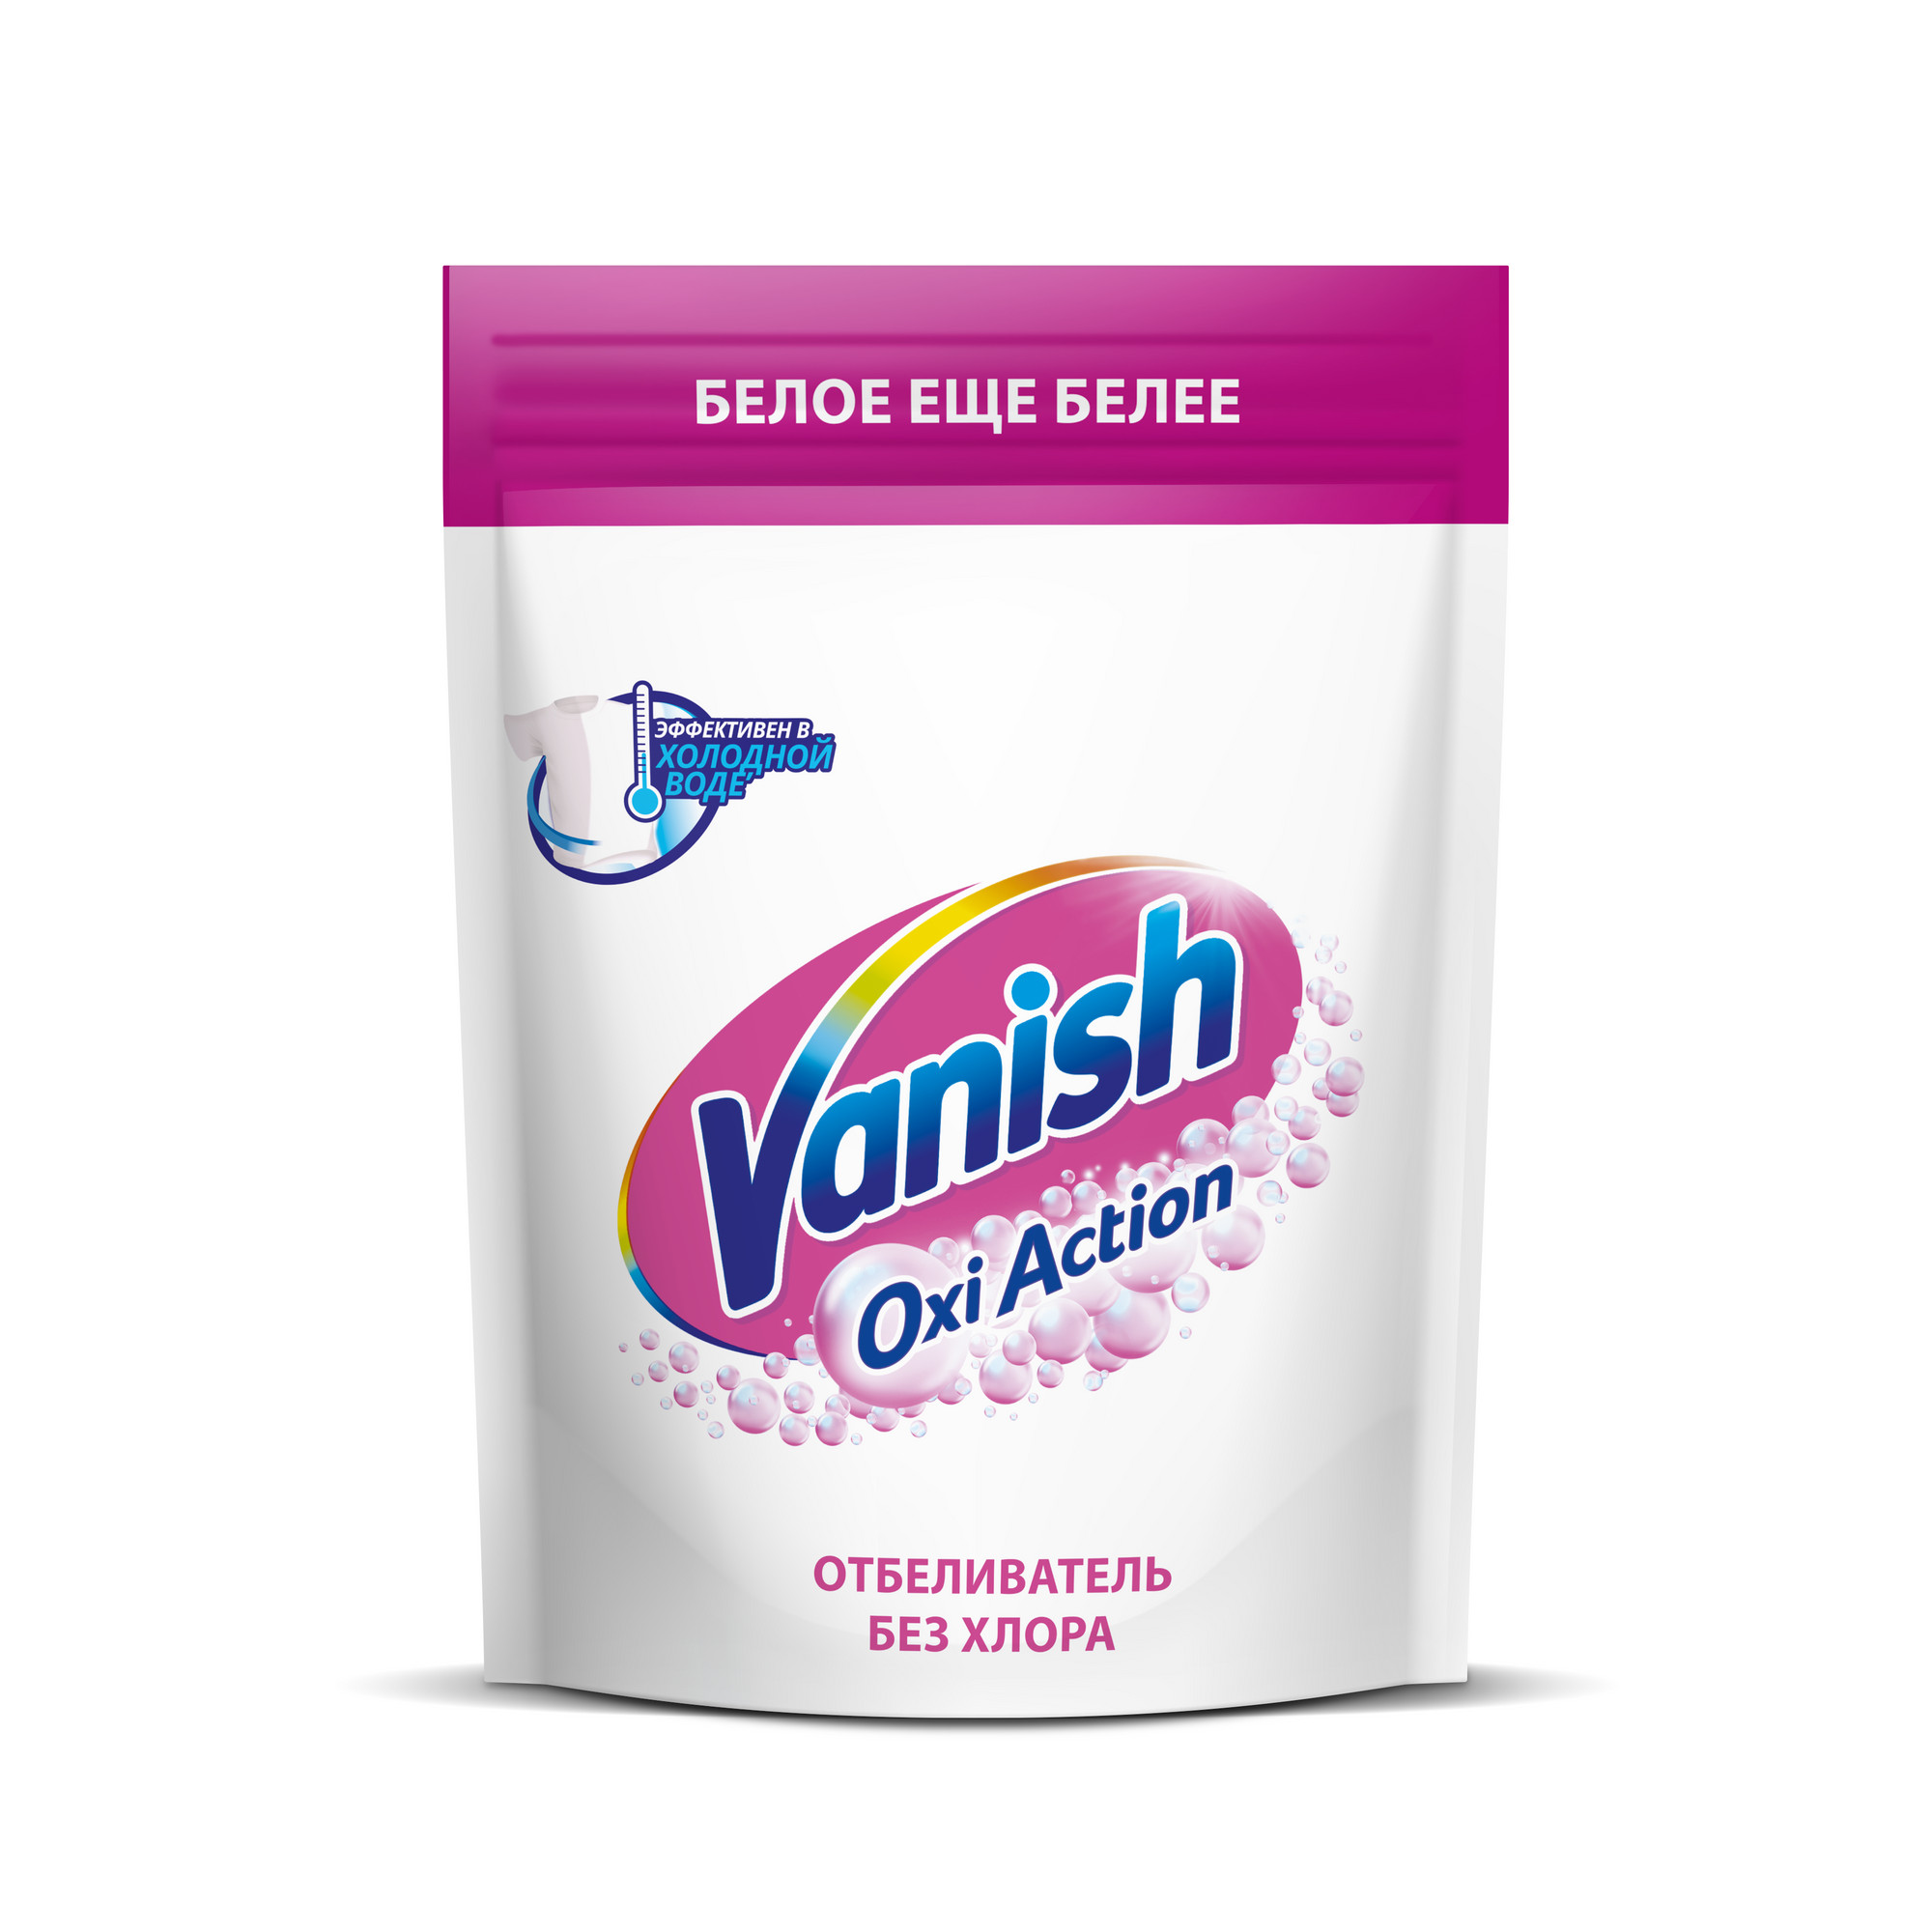 Пятновыводитель Vanish Oxi Action Кристальная белизна для тканей порошкообразный 500 г пятновыводитель vanish oxi action кристальная белизна с отбеливателем 2 л